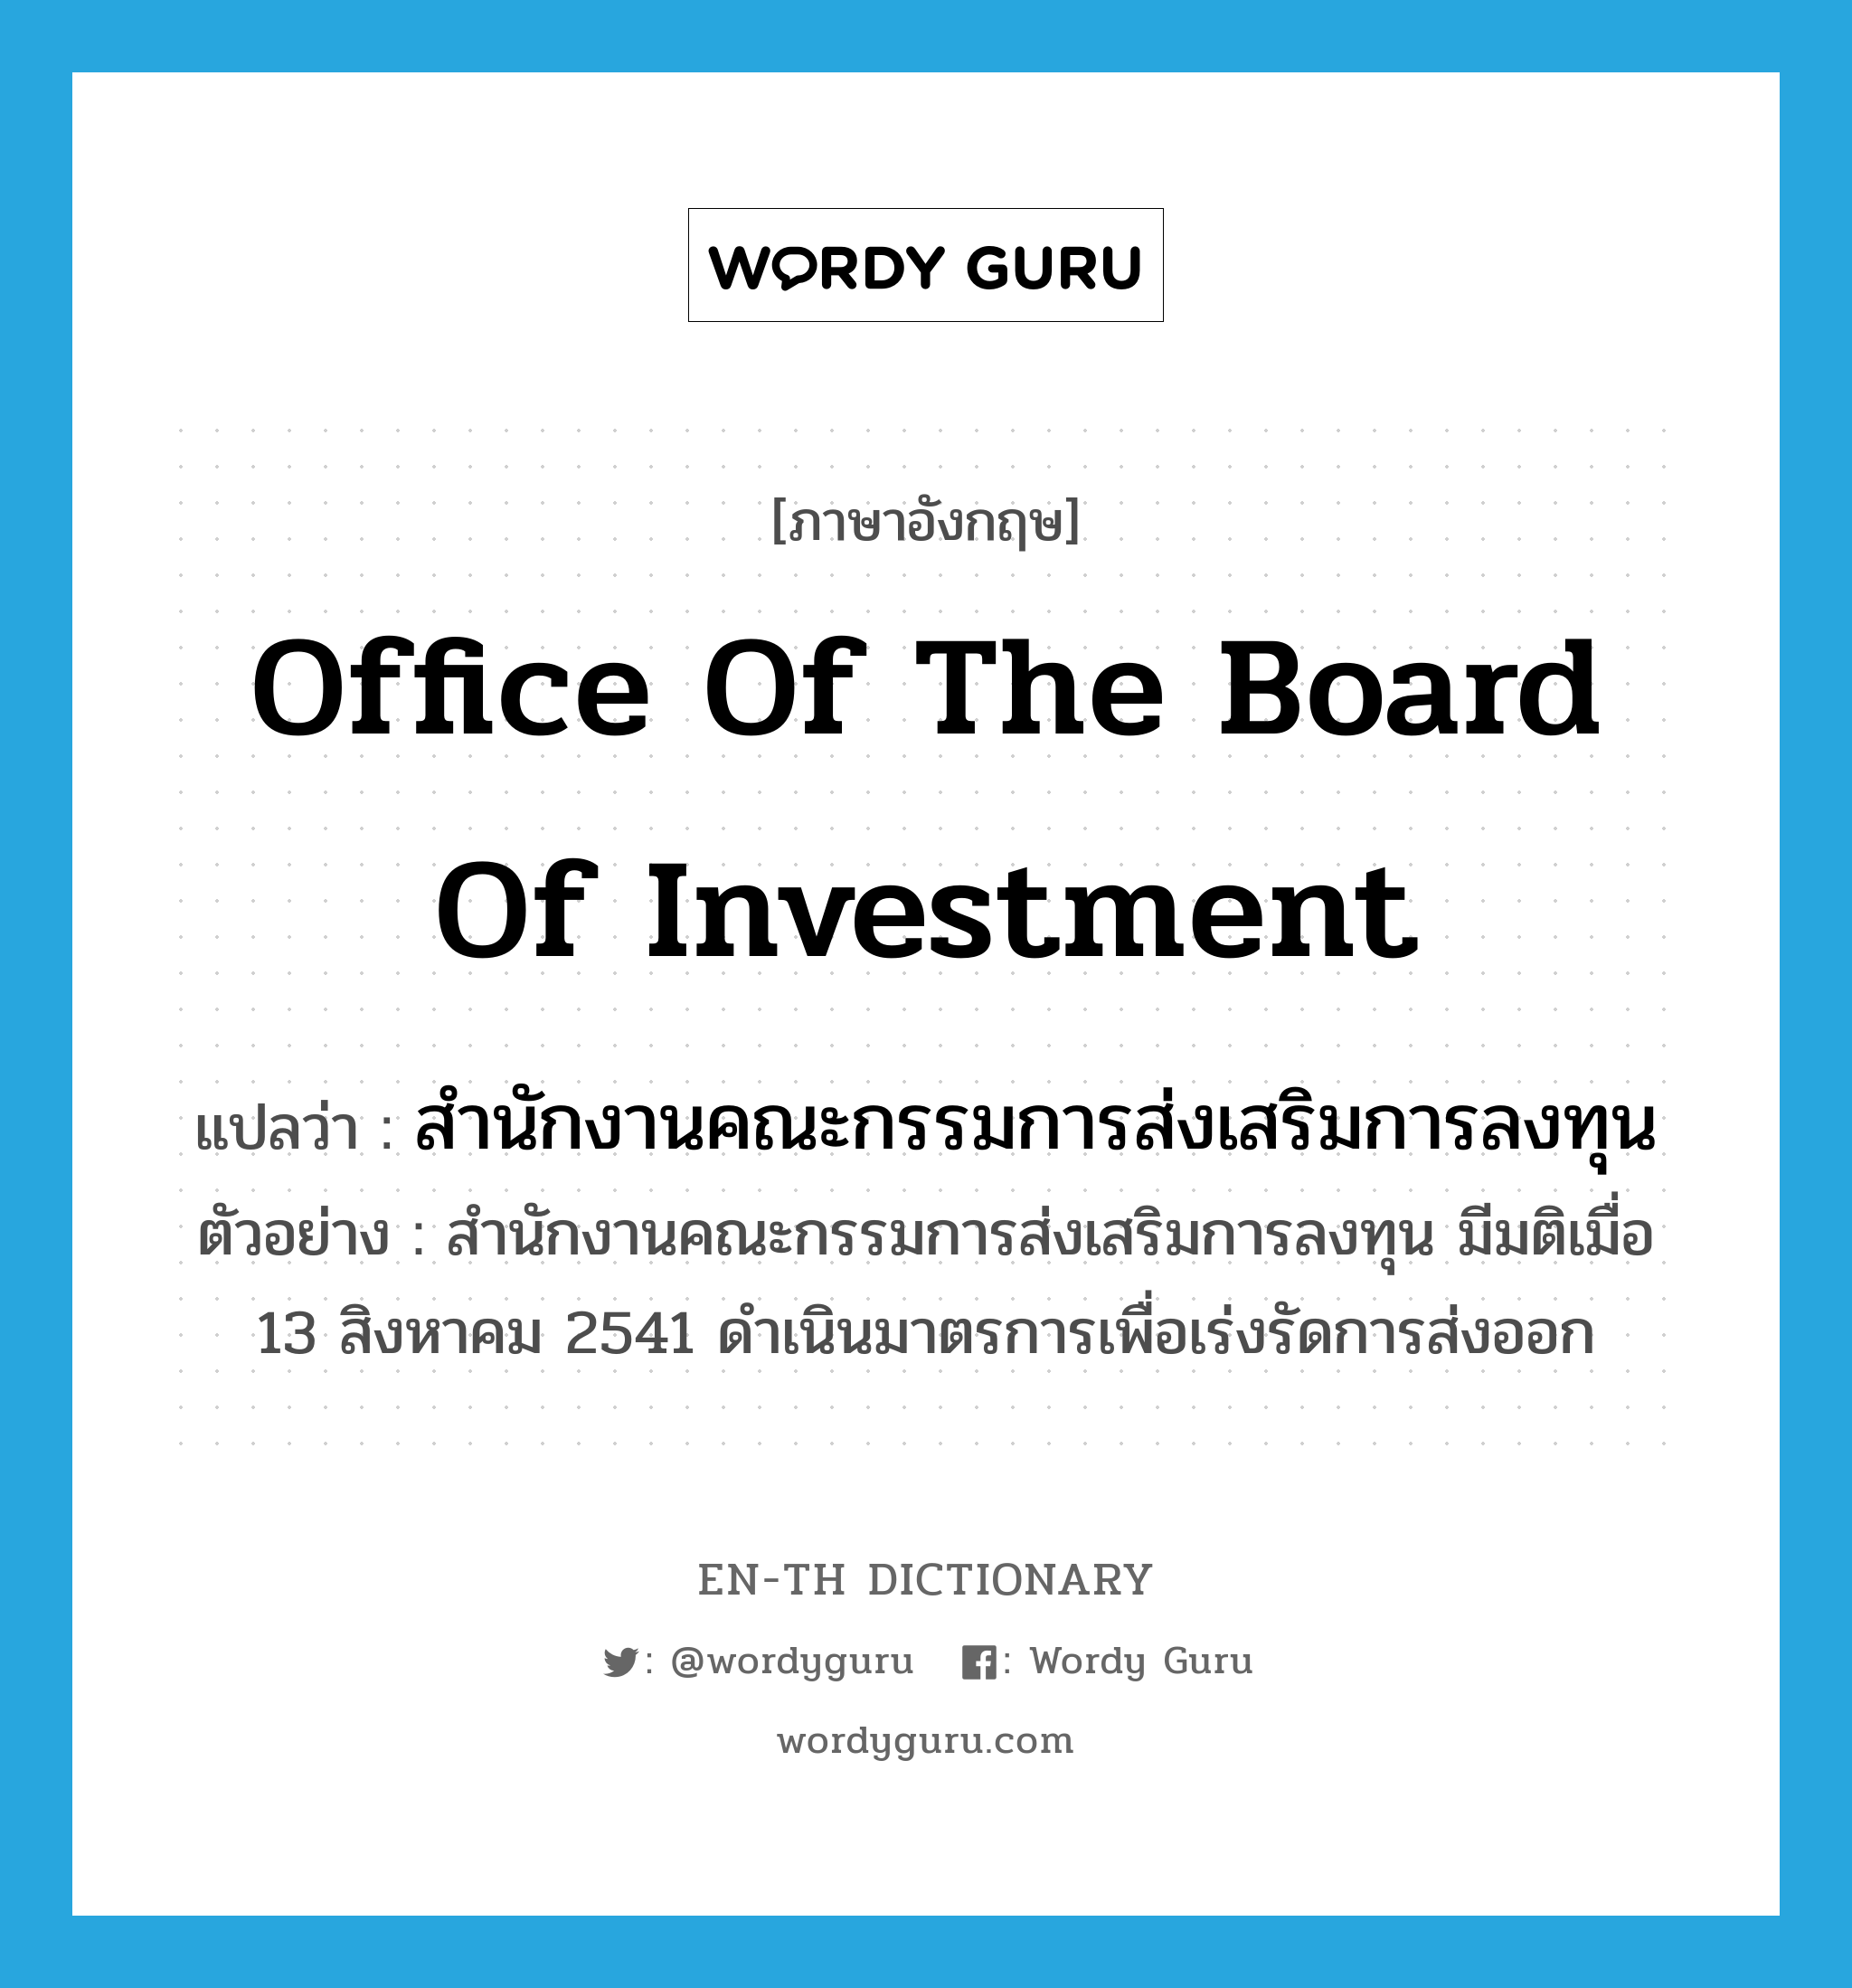 สำนักงานคณะกรรมการส่งเสริมการลงทุน ภาษาอังกฤษ?, คำศัพท์ภาษาอังกฤษ สำนักงานคณะกรรมการส่งเสริมการลงทุน แปลว่า Office of the Board of Investment ประเภท N ตัวอย่าง สำนักงานคณะกรรมการส่งเสริมการลงทุน มีมติเมื่อ 13 สิงหาคม 2541 ดำเนินมาตรการเพื่อเร่งรัดการส่งออก หมวด N